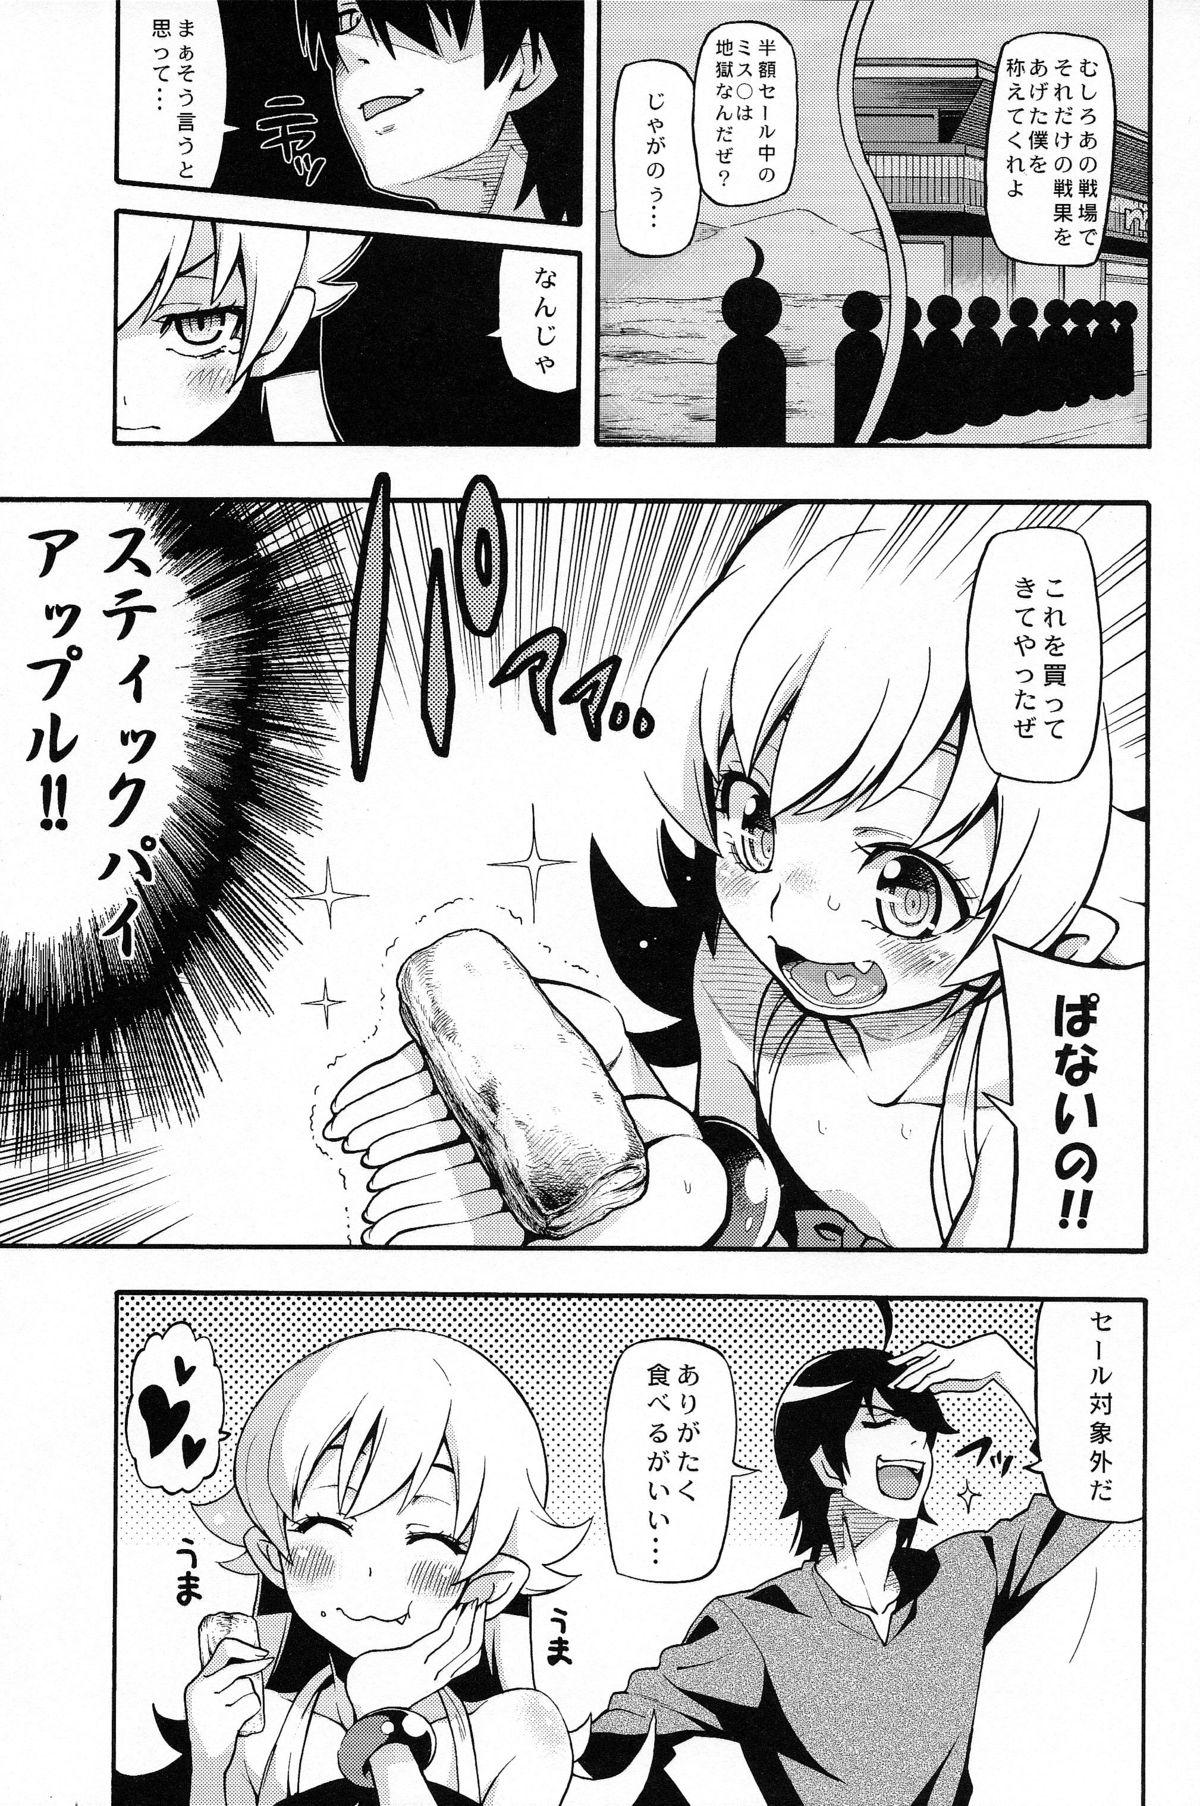 Male Kuzu no Nii chan dakedo Ai sae areba Kankei nain daze - Bakemonogatari Chupando - Page 7